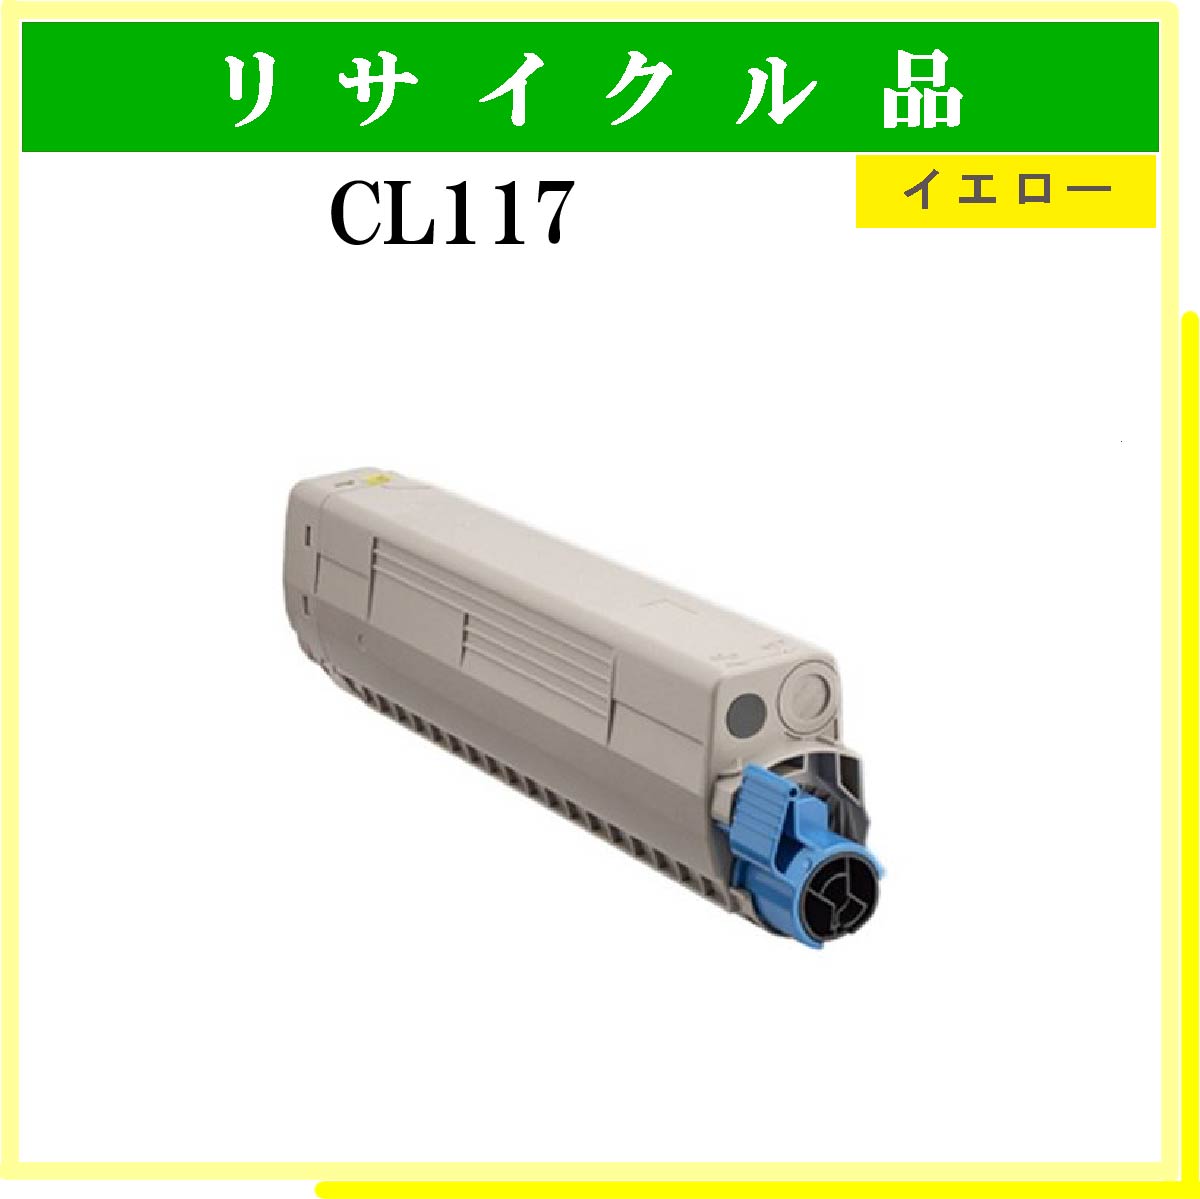 CL117 ｲｴﾛｰ